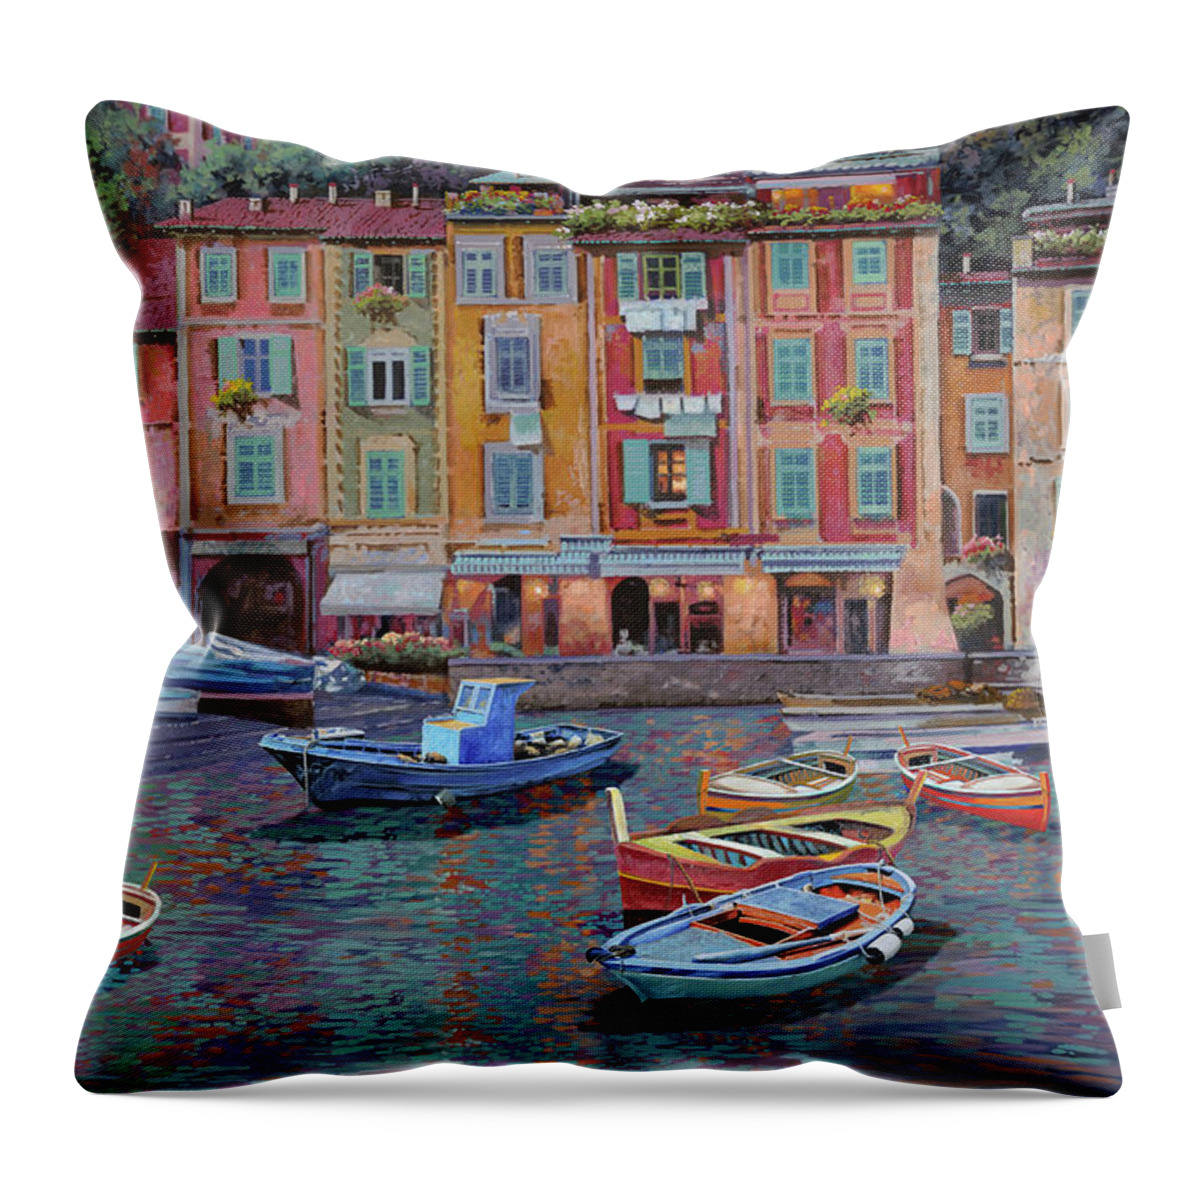 Portofino Throw Pillow featuring the painting Portofino al crepuscolo by Guido Borelli